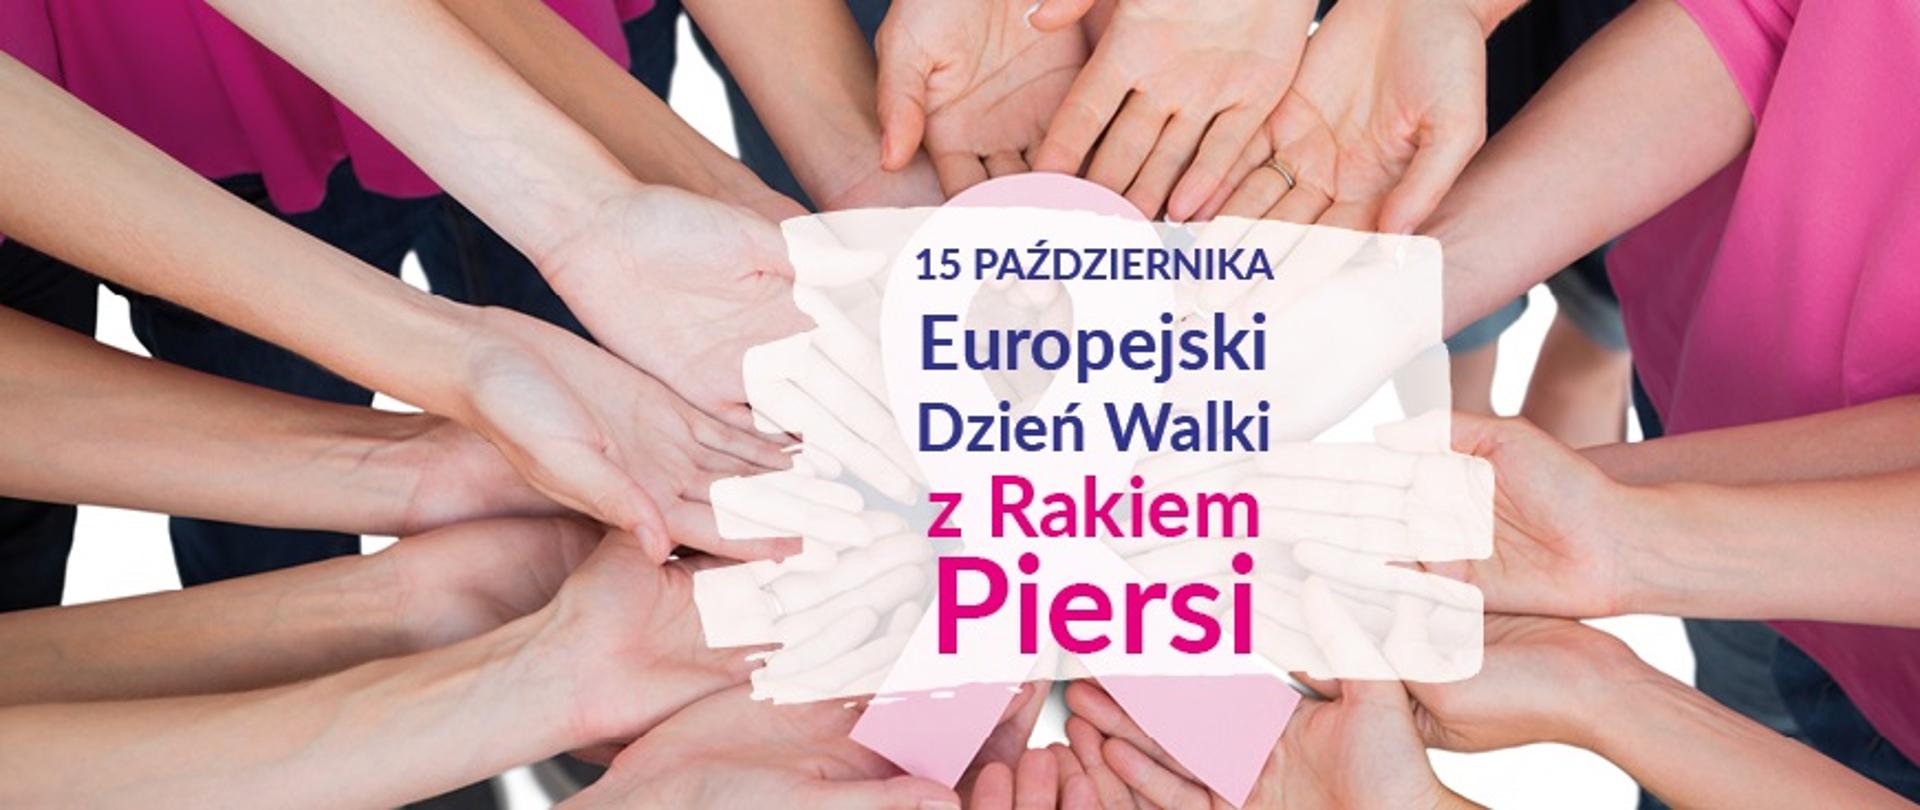 Dłonie kobiet trzymające różową wstążkę - symbol Europejskiego Dnia Walki z Rakiem Piersi